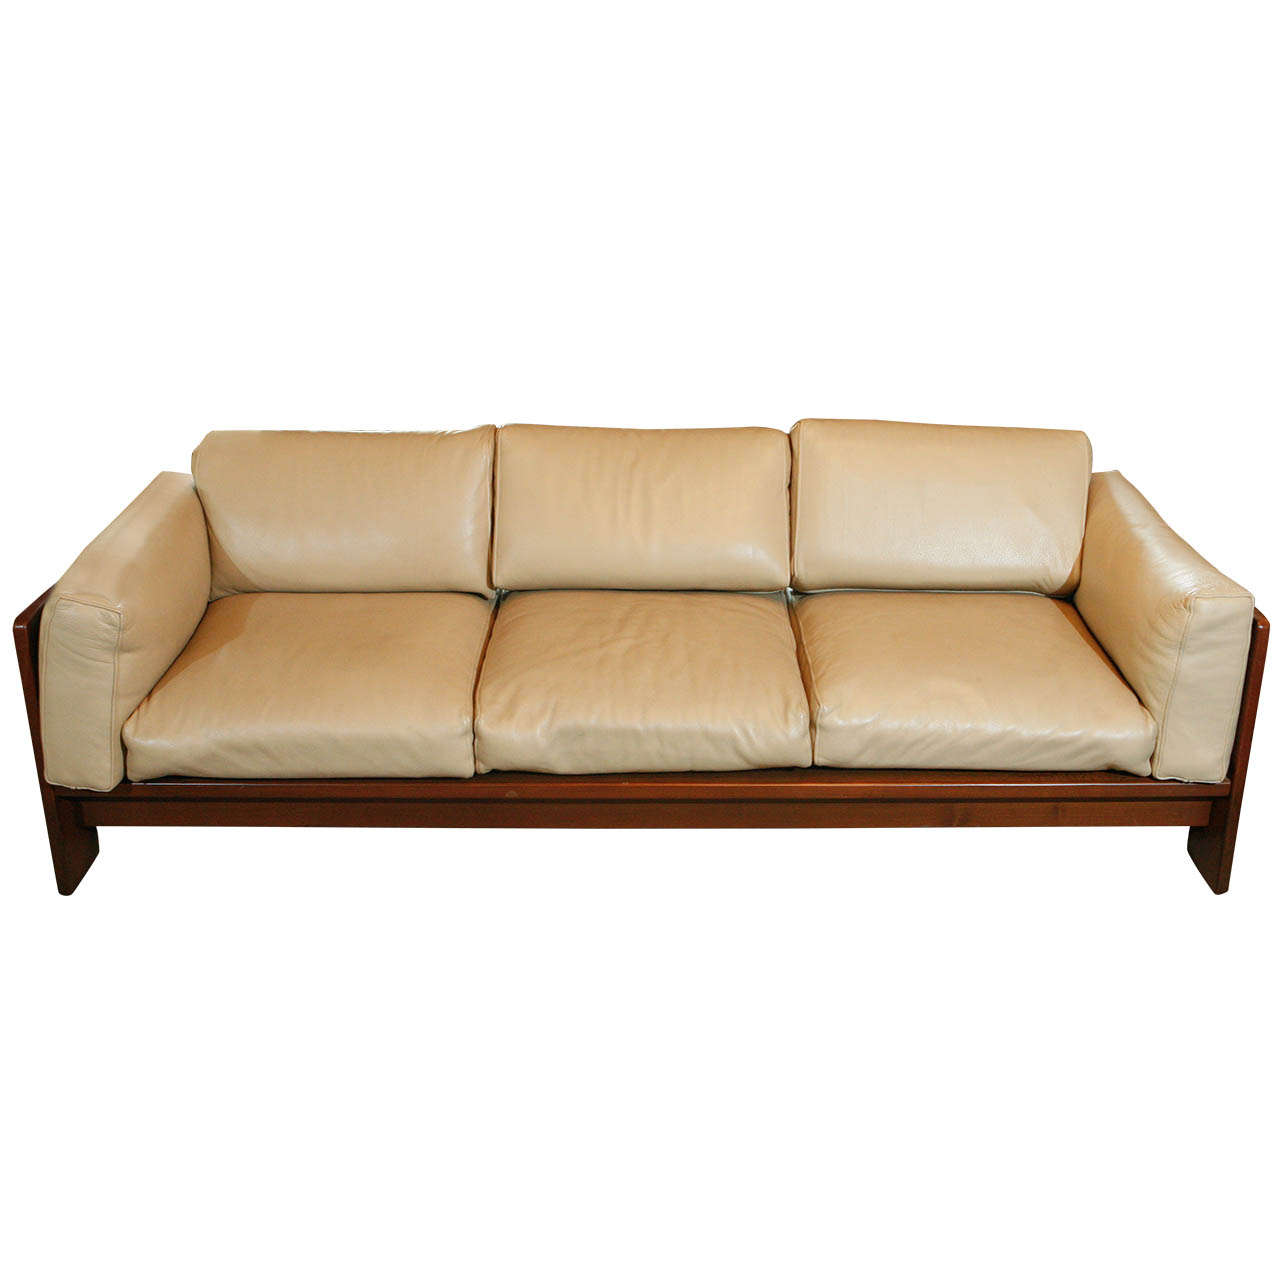 'Bastiano' Sofa by Tobia Scarpa